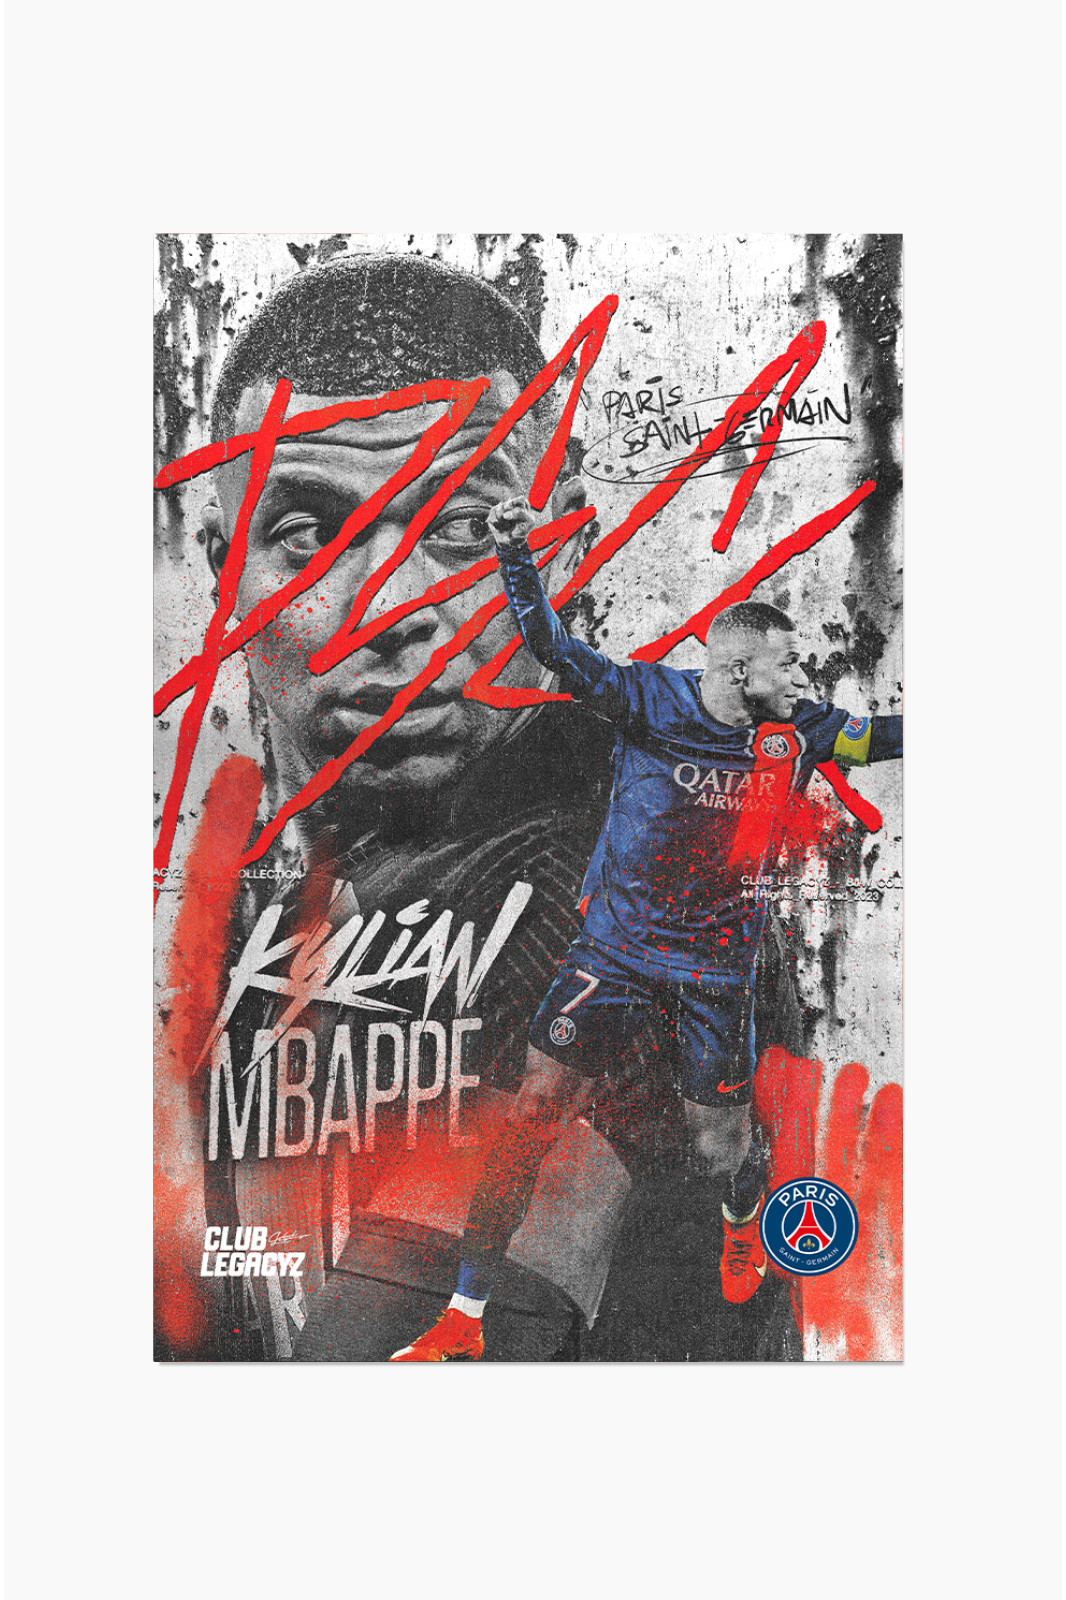 Paris Saint-Germain - Kylian Mbappé Black & White Poster limited to 100